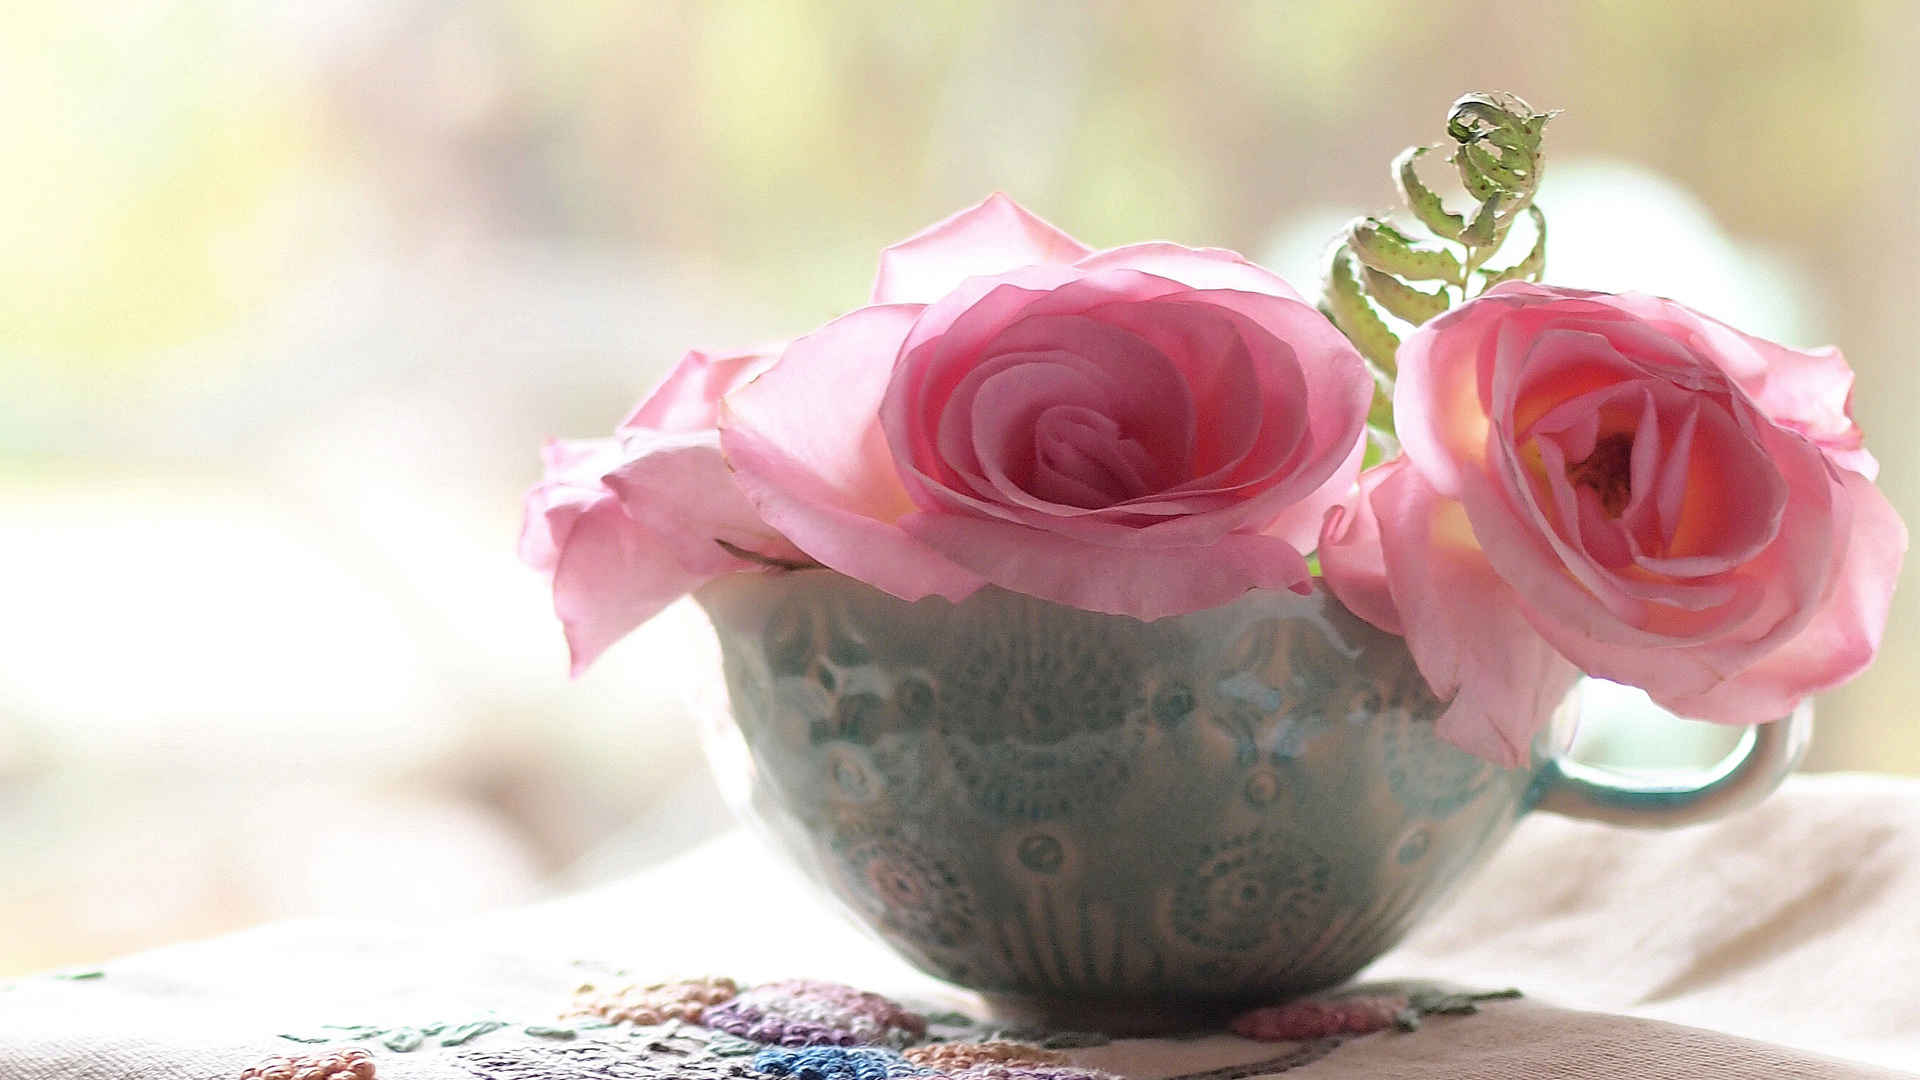 碗里的玫瑰花朵壁纸高清图片唯美-